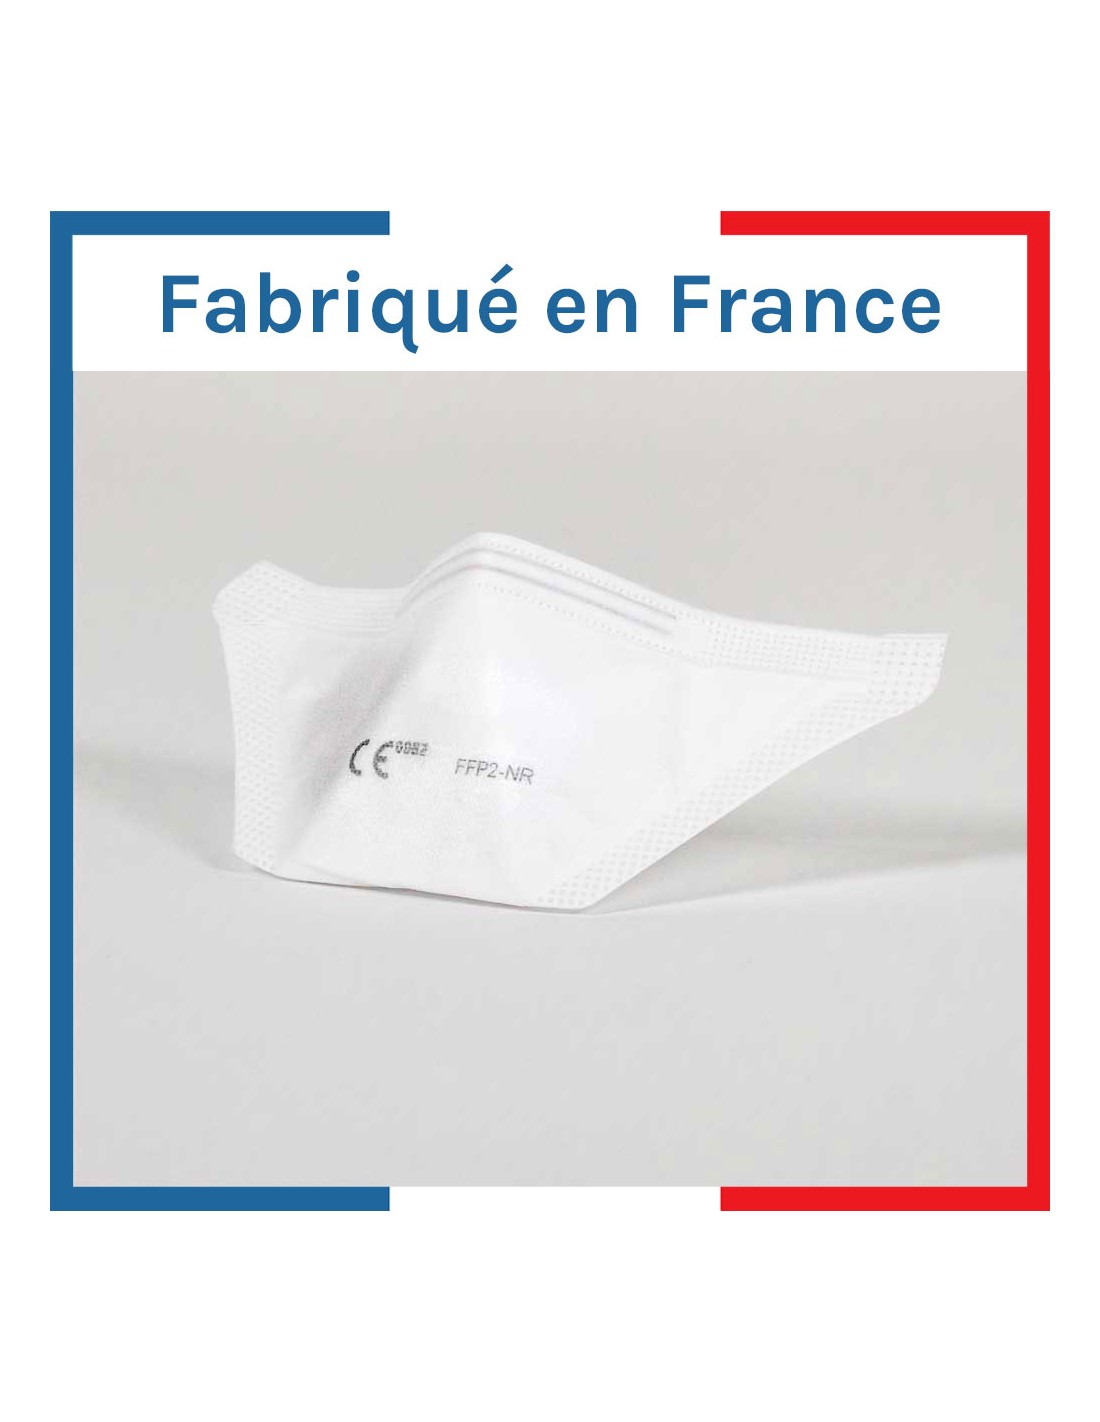 Masque FFP2 norme CE EN149, Made in France